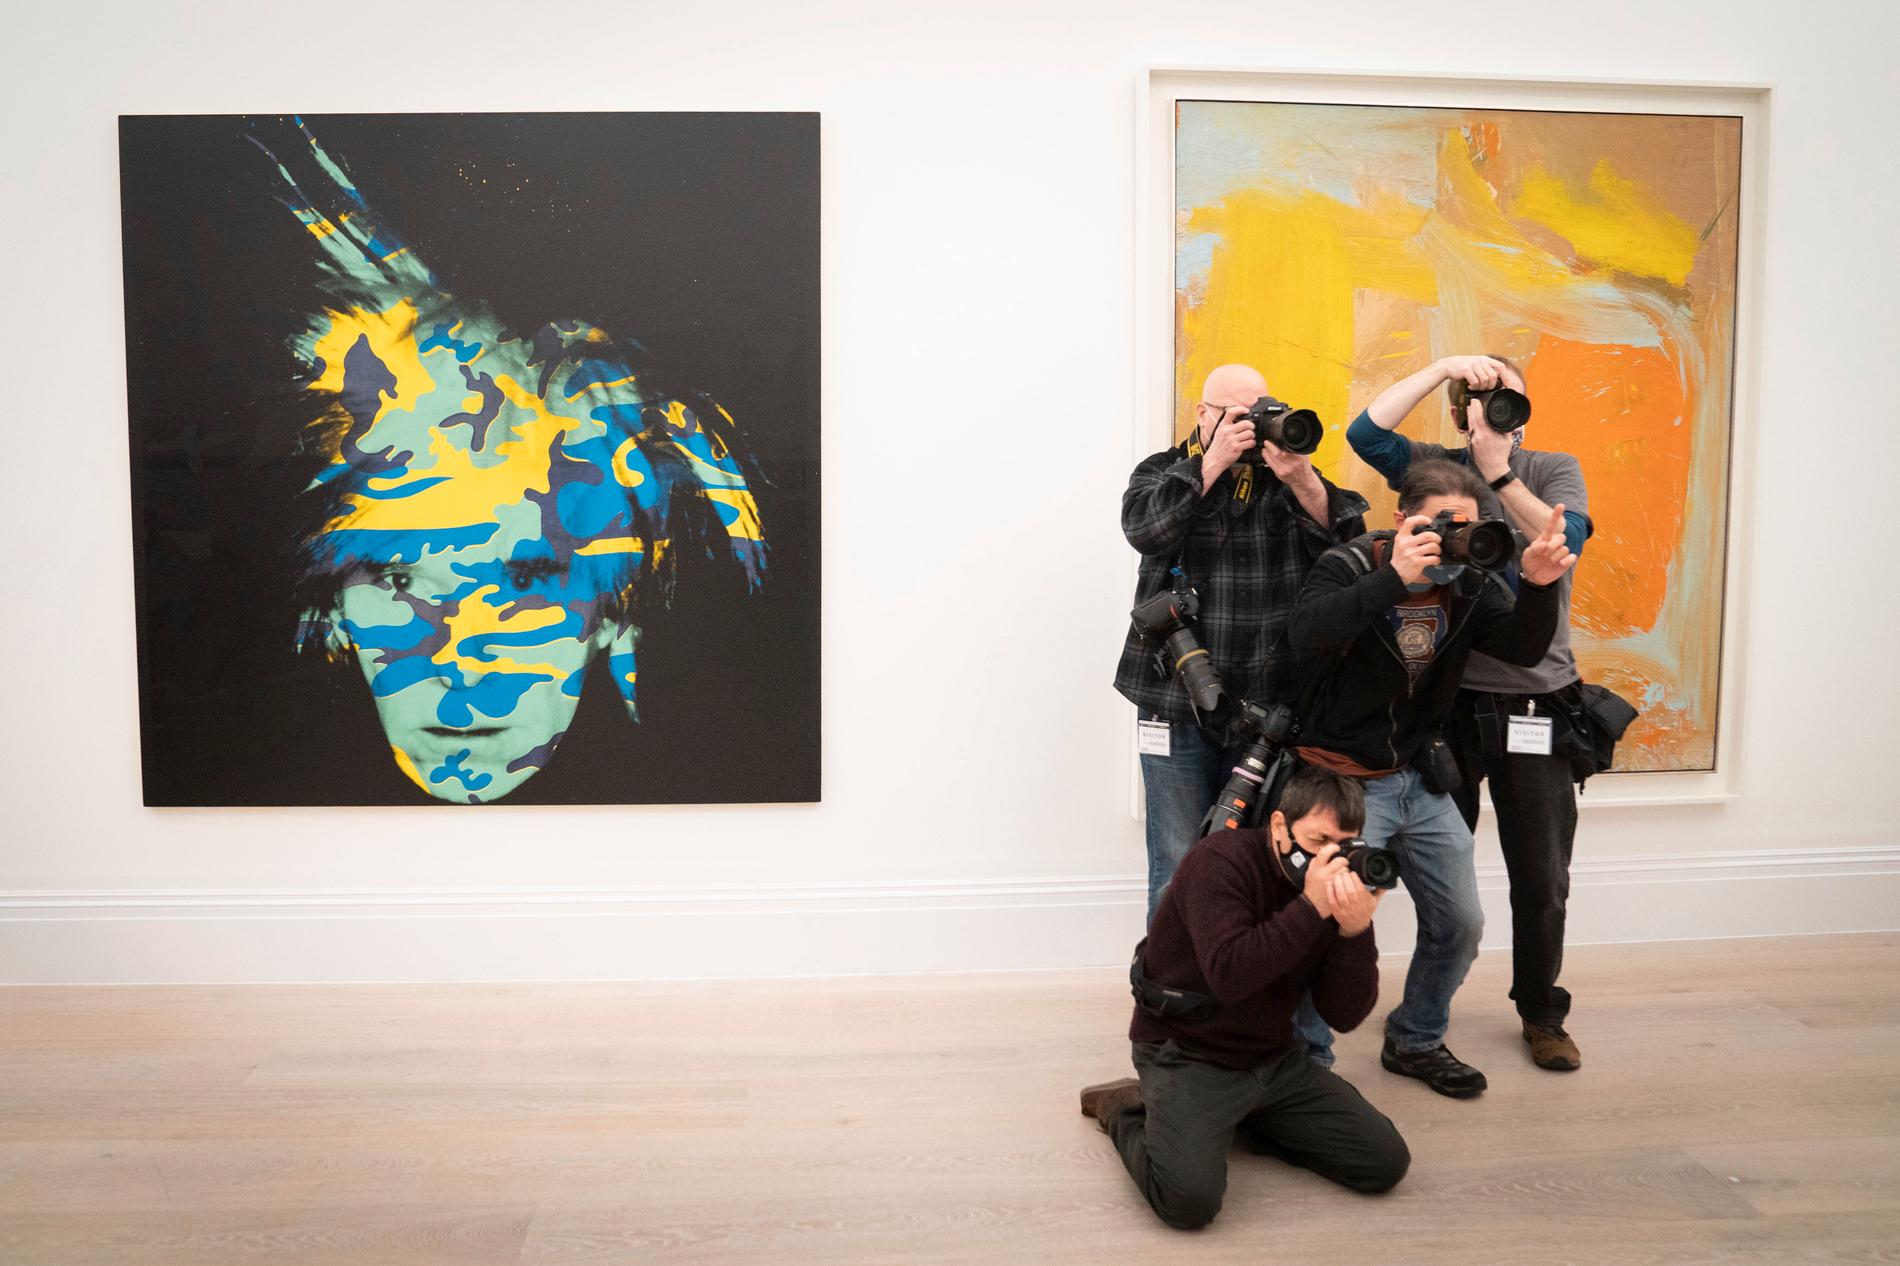 Andy Warhol,s självporträtt från 1986 ska auktioneras ut på Sotheby's. Även konstverk av Pablo Picasso, Mark Rothko och andra moderna mästare ska säljas på auktion. Försäljningen har beordrats av en amerikansk domstol som en del av miljardärsparets bittra skilsmässa. Verken tillhörde fastighetsutvecklaren Harry Macklowe och hans fru Linda, som